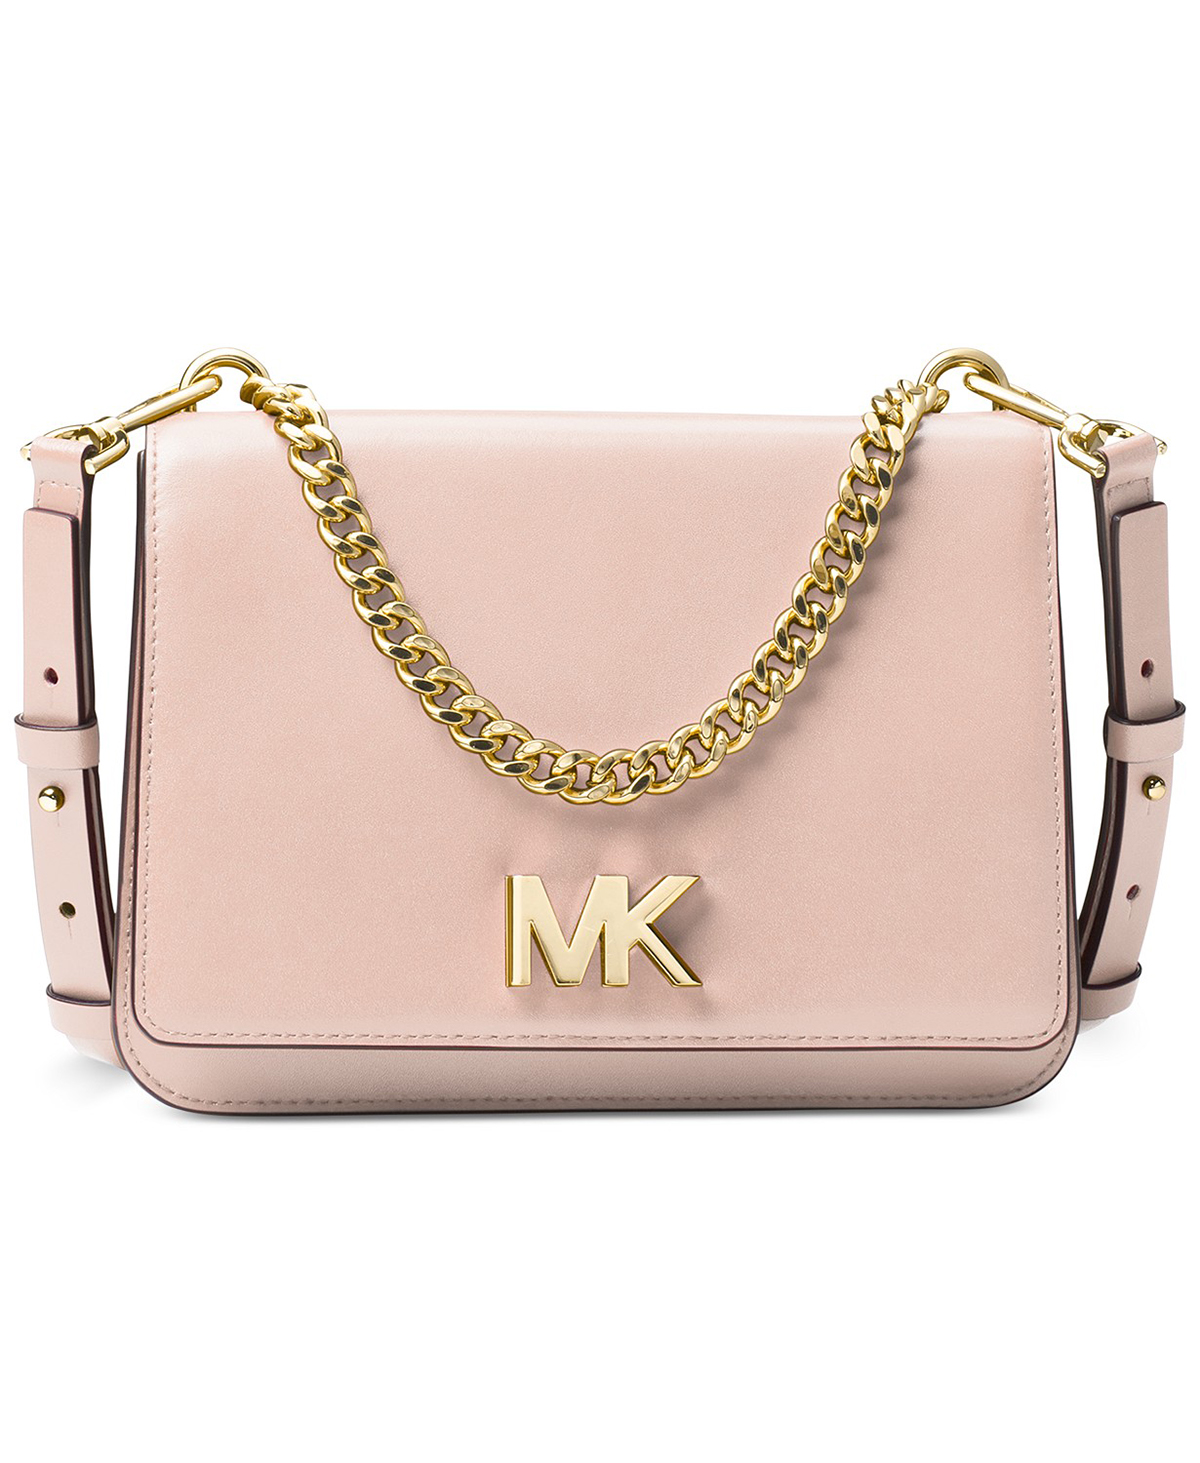 mk cross body bag sale